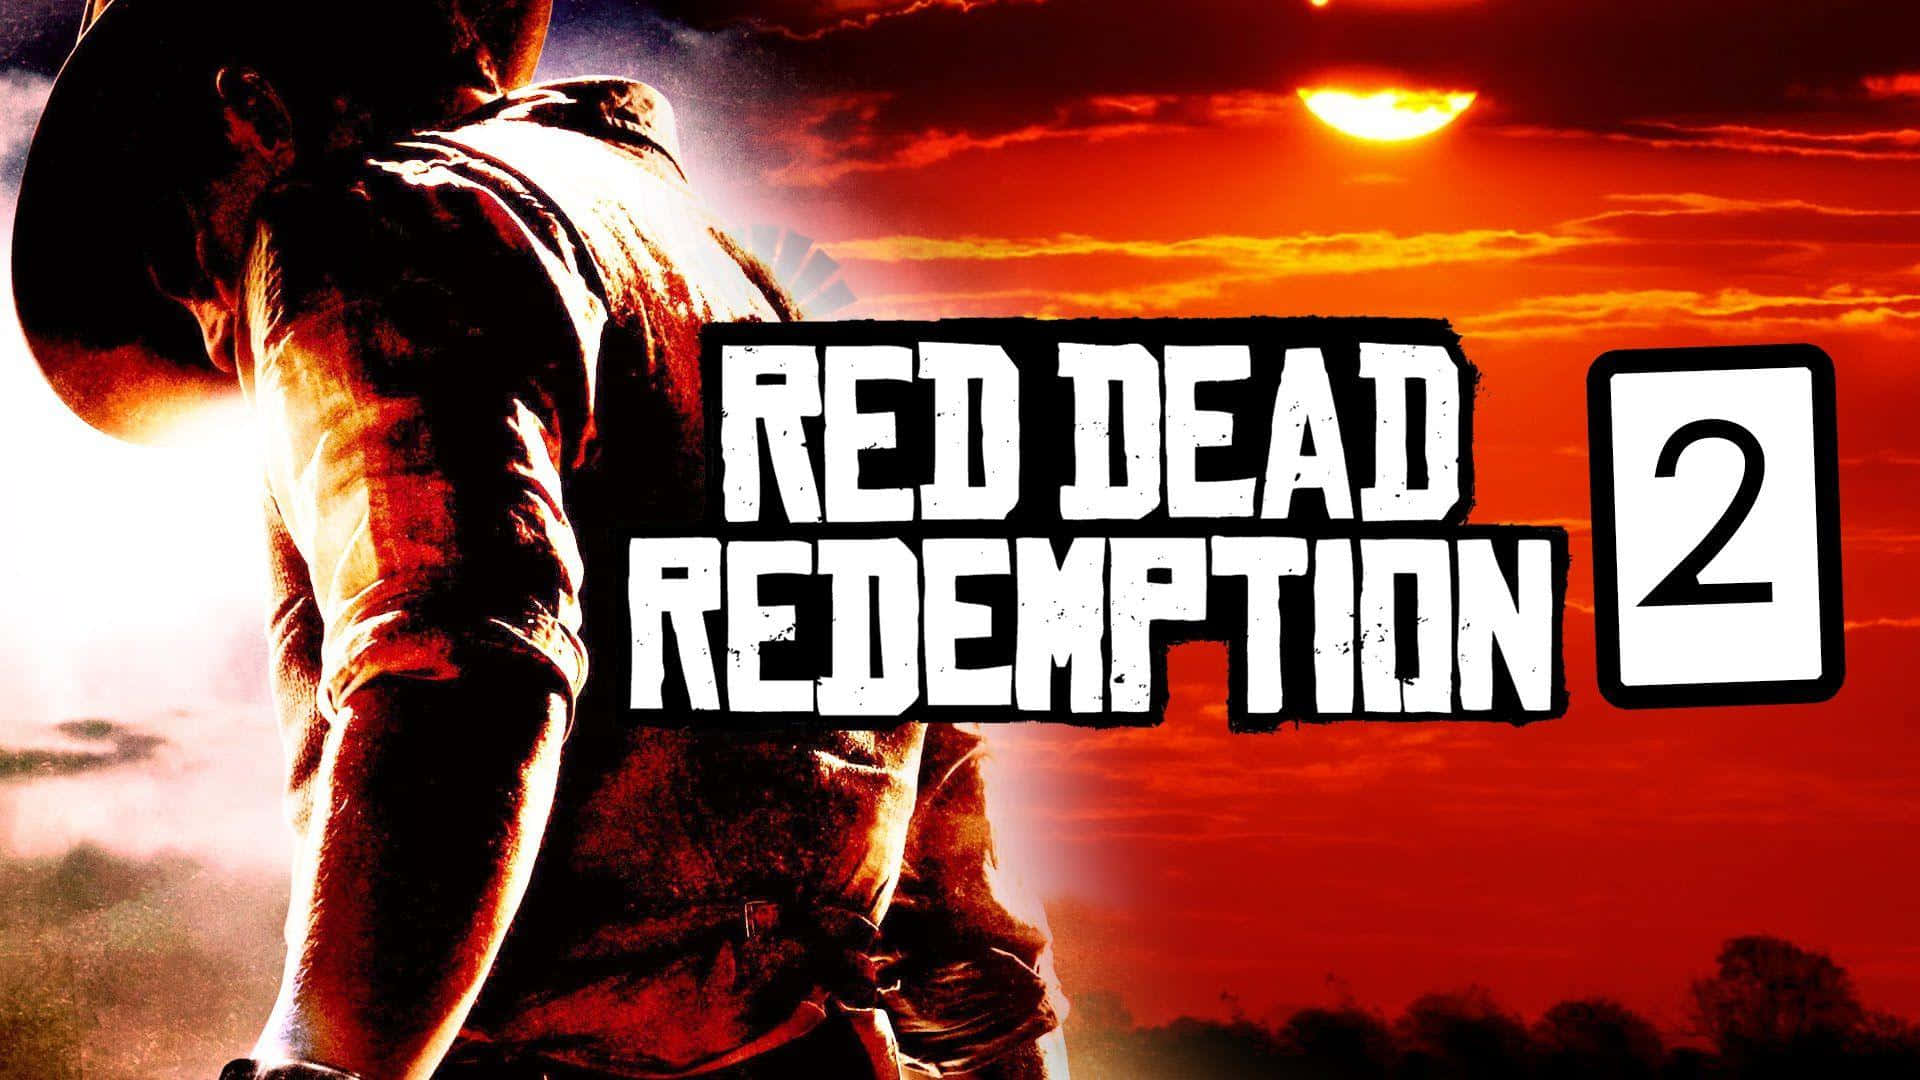 Explorael Salvaje Oeste En Red Dead Redemption 2 Full Hd. Fondo de pantalla